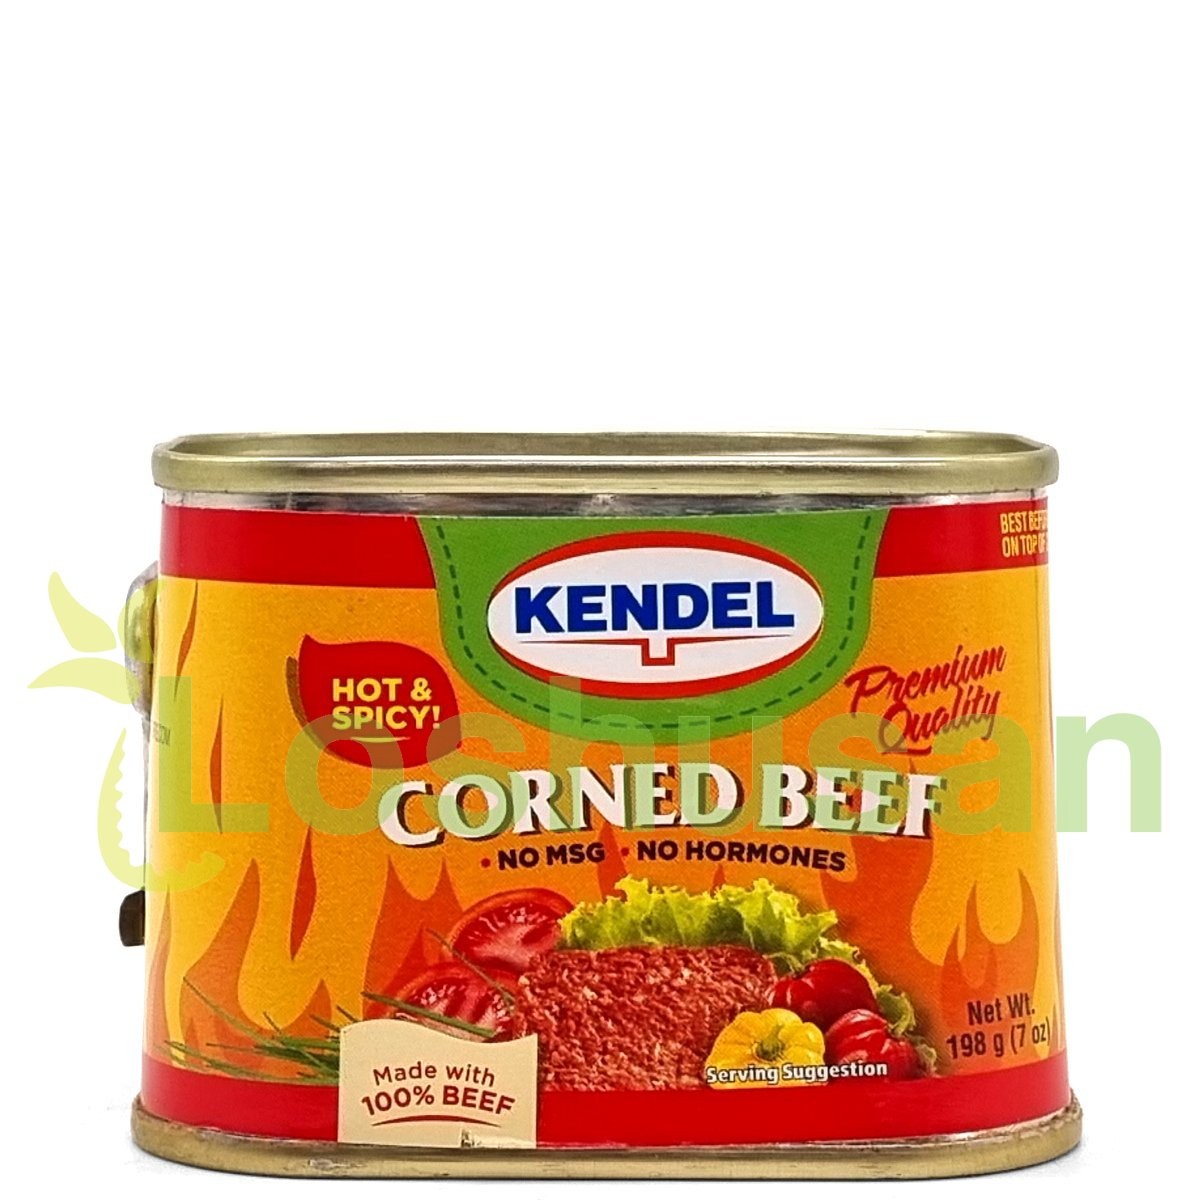 KENDEL CORNED BEEF SPICY 7oz